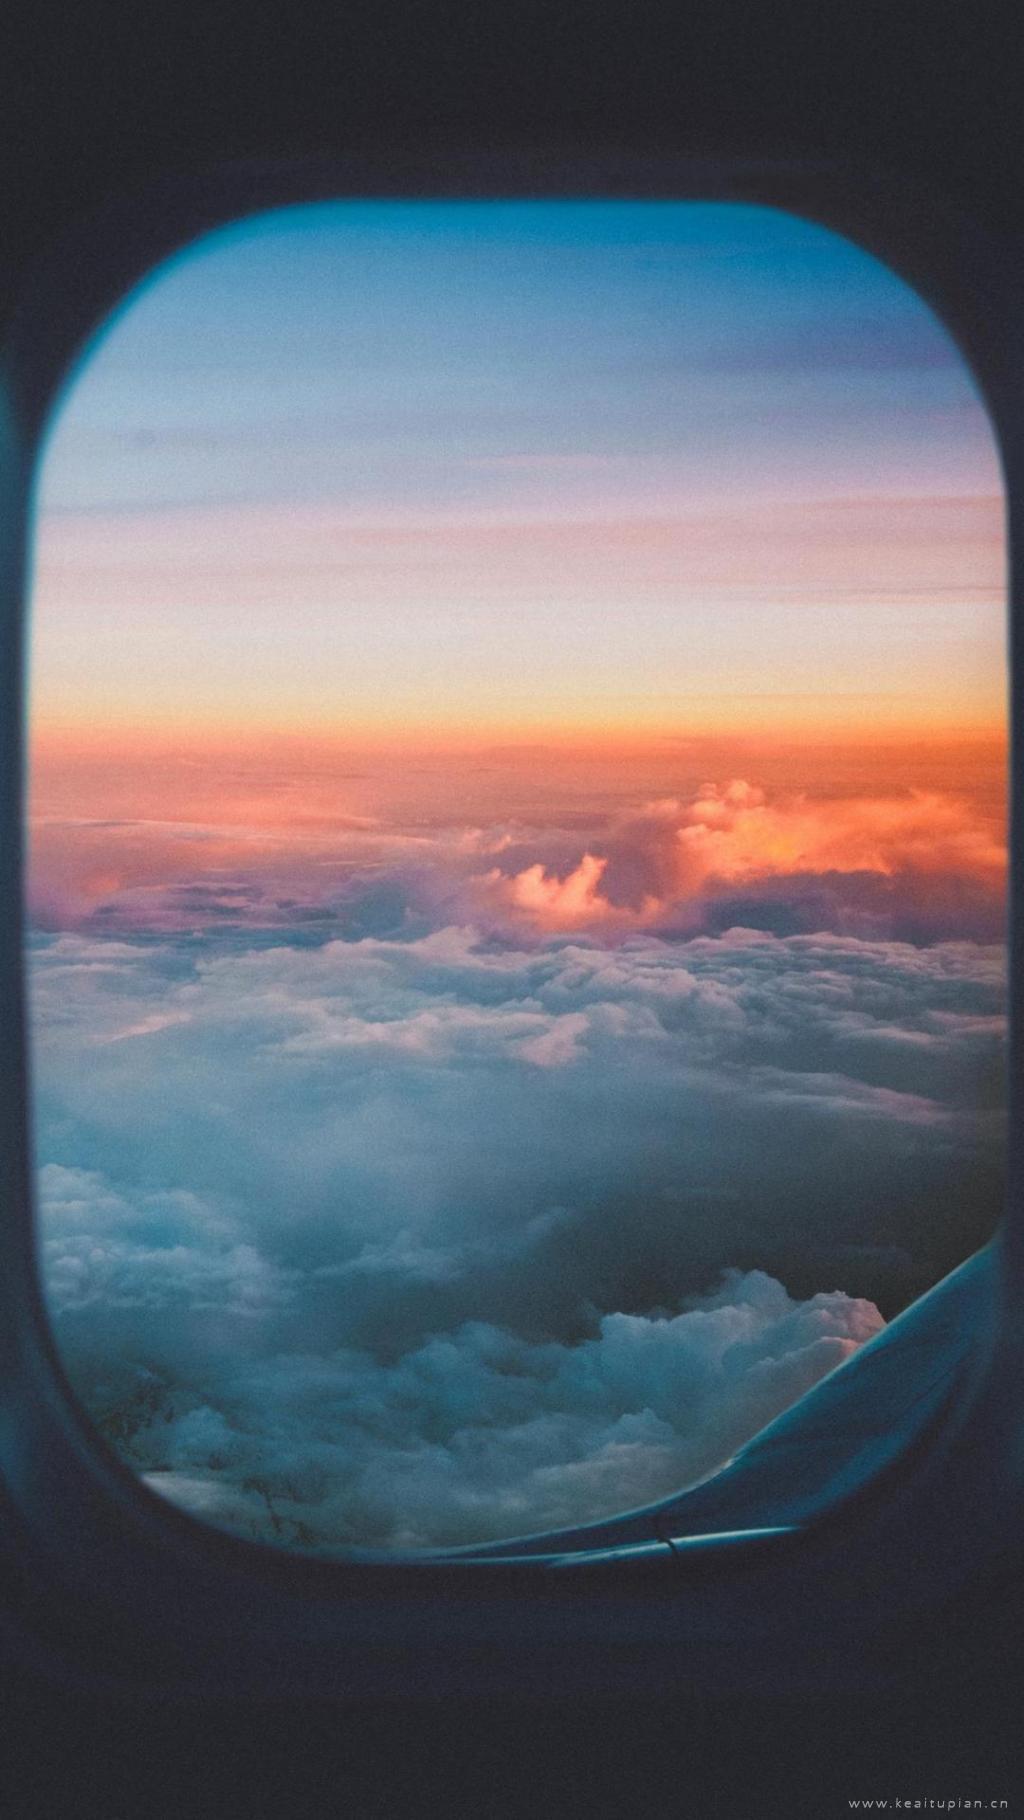 飞机窗外的云海霞光波涛起伏美丽风景图片